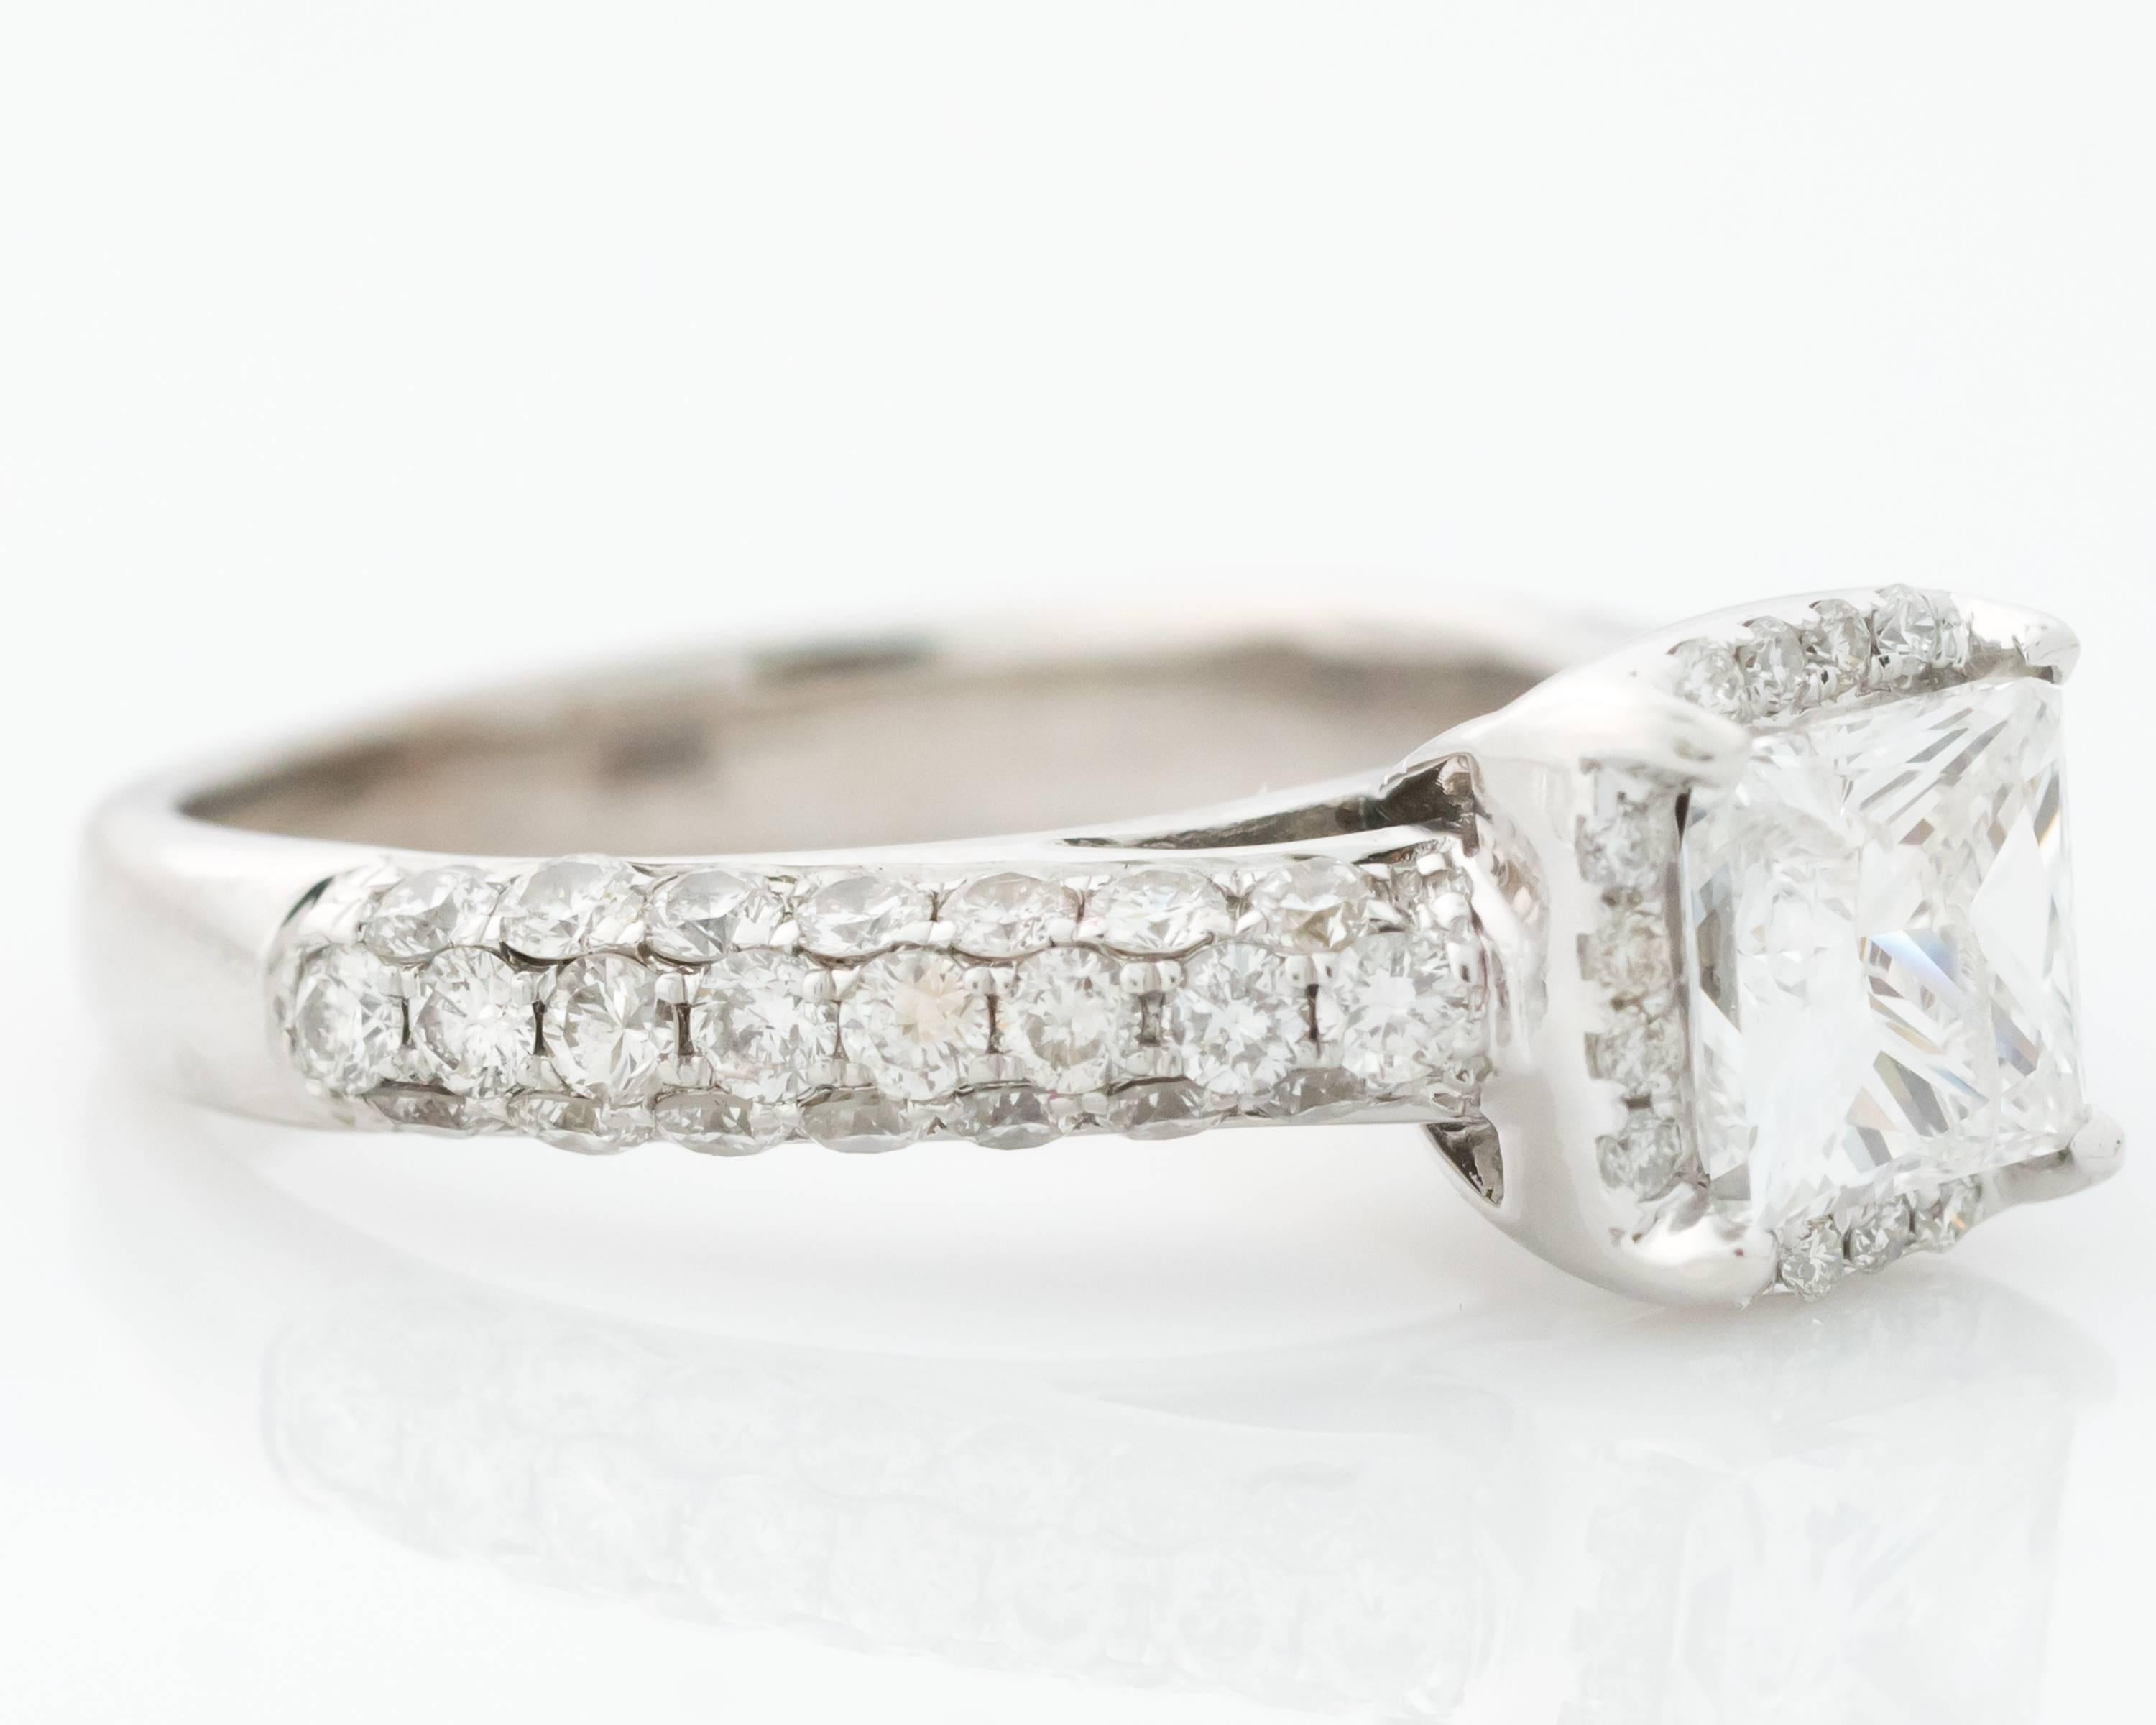 2017 Brandneu und hausgemacht!
1.00 Karat Princess Cut Diamant Solitär Verlobungsring mit Diamant Halo.
Dieser Ring aus 14 Karat Weißgold hat einen 6 Millimeter großen Mittelstein in einer 4-Krappen-Fassung. Die vordere Hälfte der Ringschiene ist